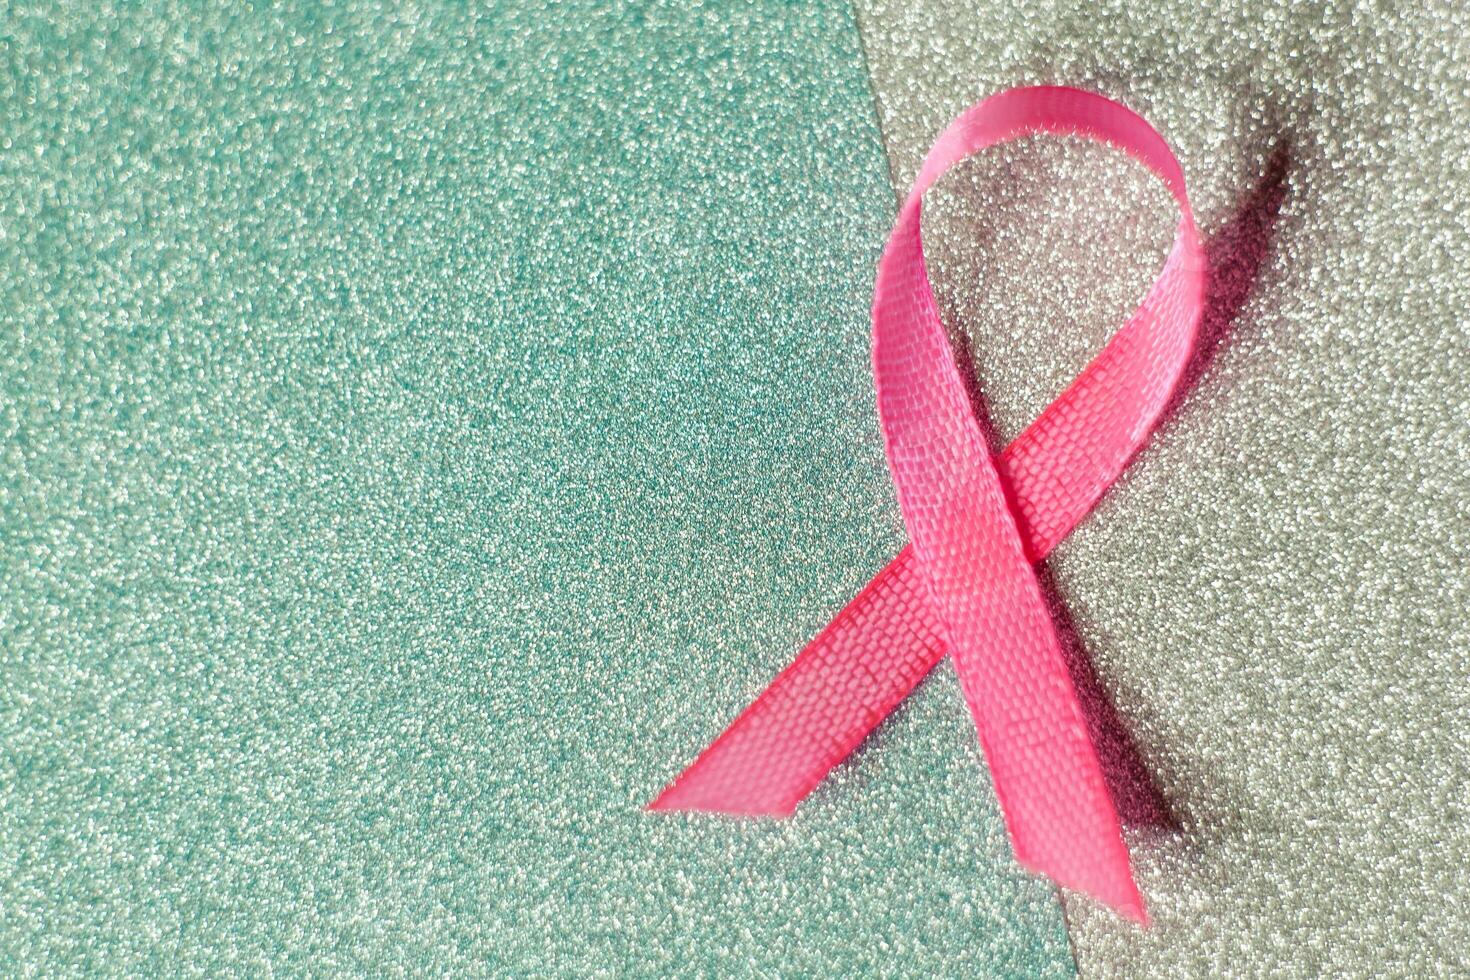 rosado cinta para pecho cáncer conciencia, simbólico arco color levantamiento conciencia en personas vivo con De las mujeres pecho tumor enfermedad. arco aislado con recorte Brillantina azul antecedentes foto